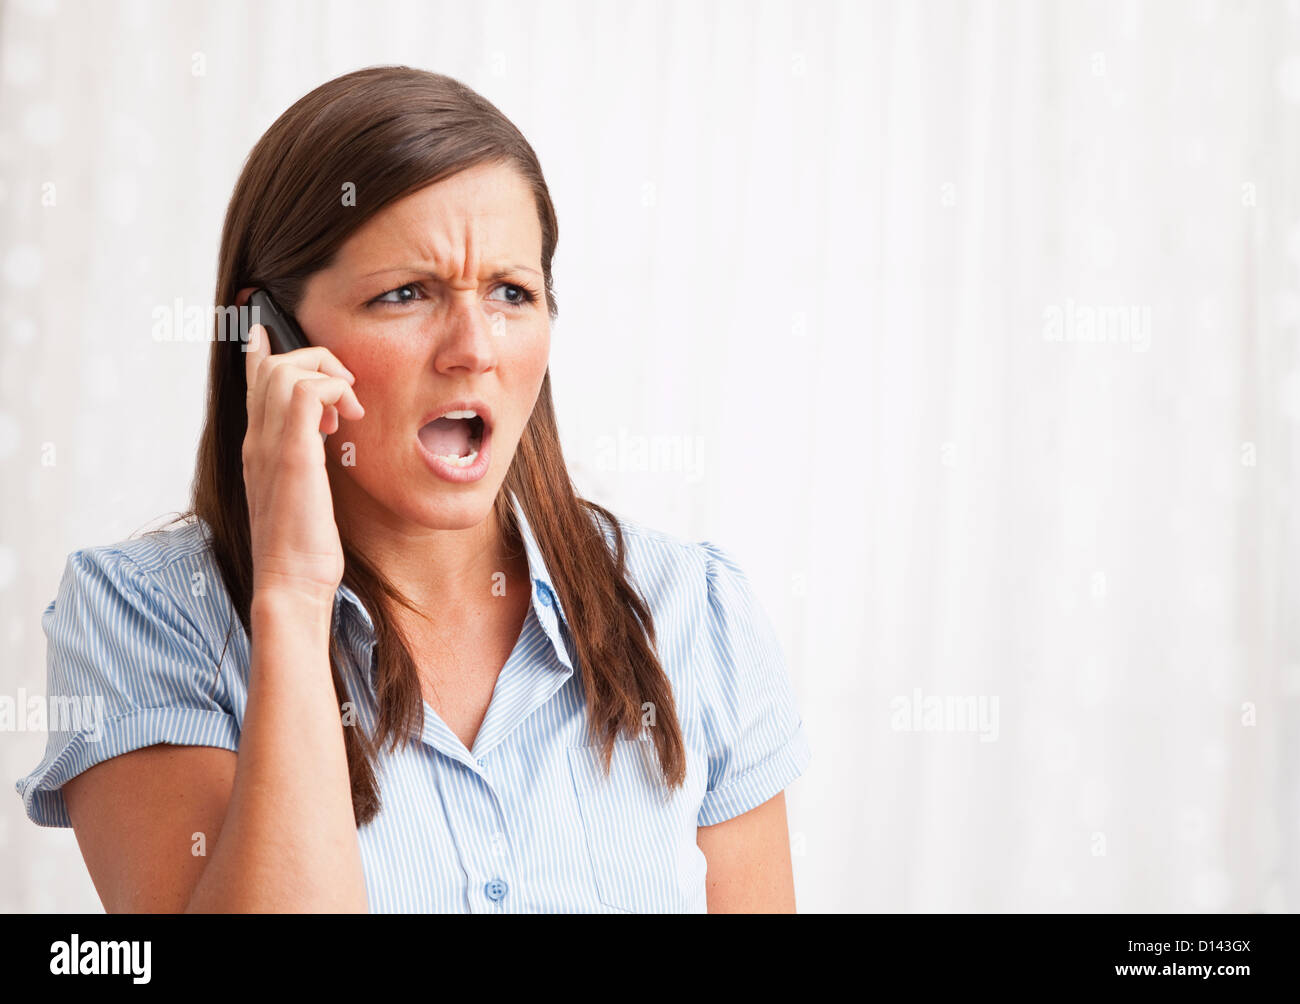 USA, Illinois, Metamora, young woman shouting into mobile phone Stock Photo